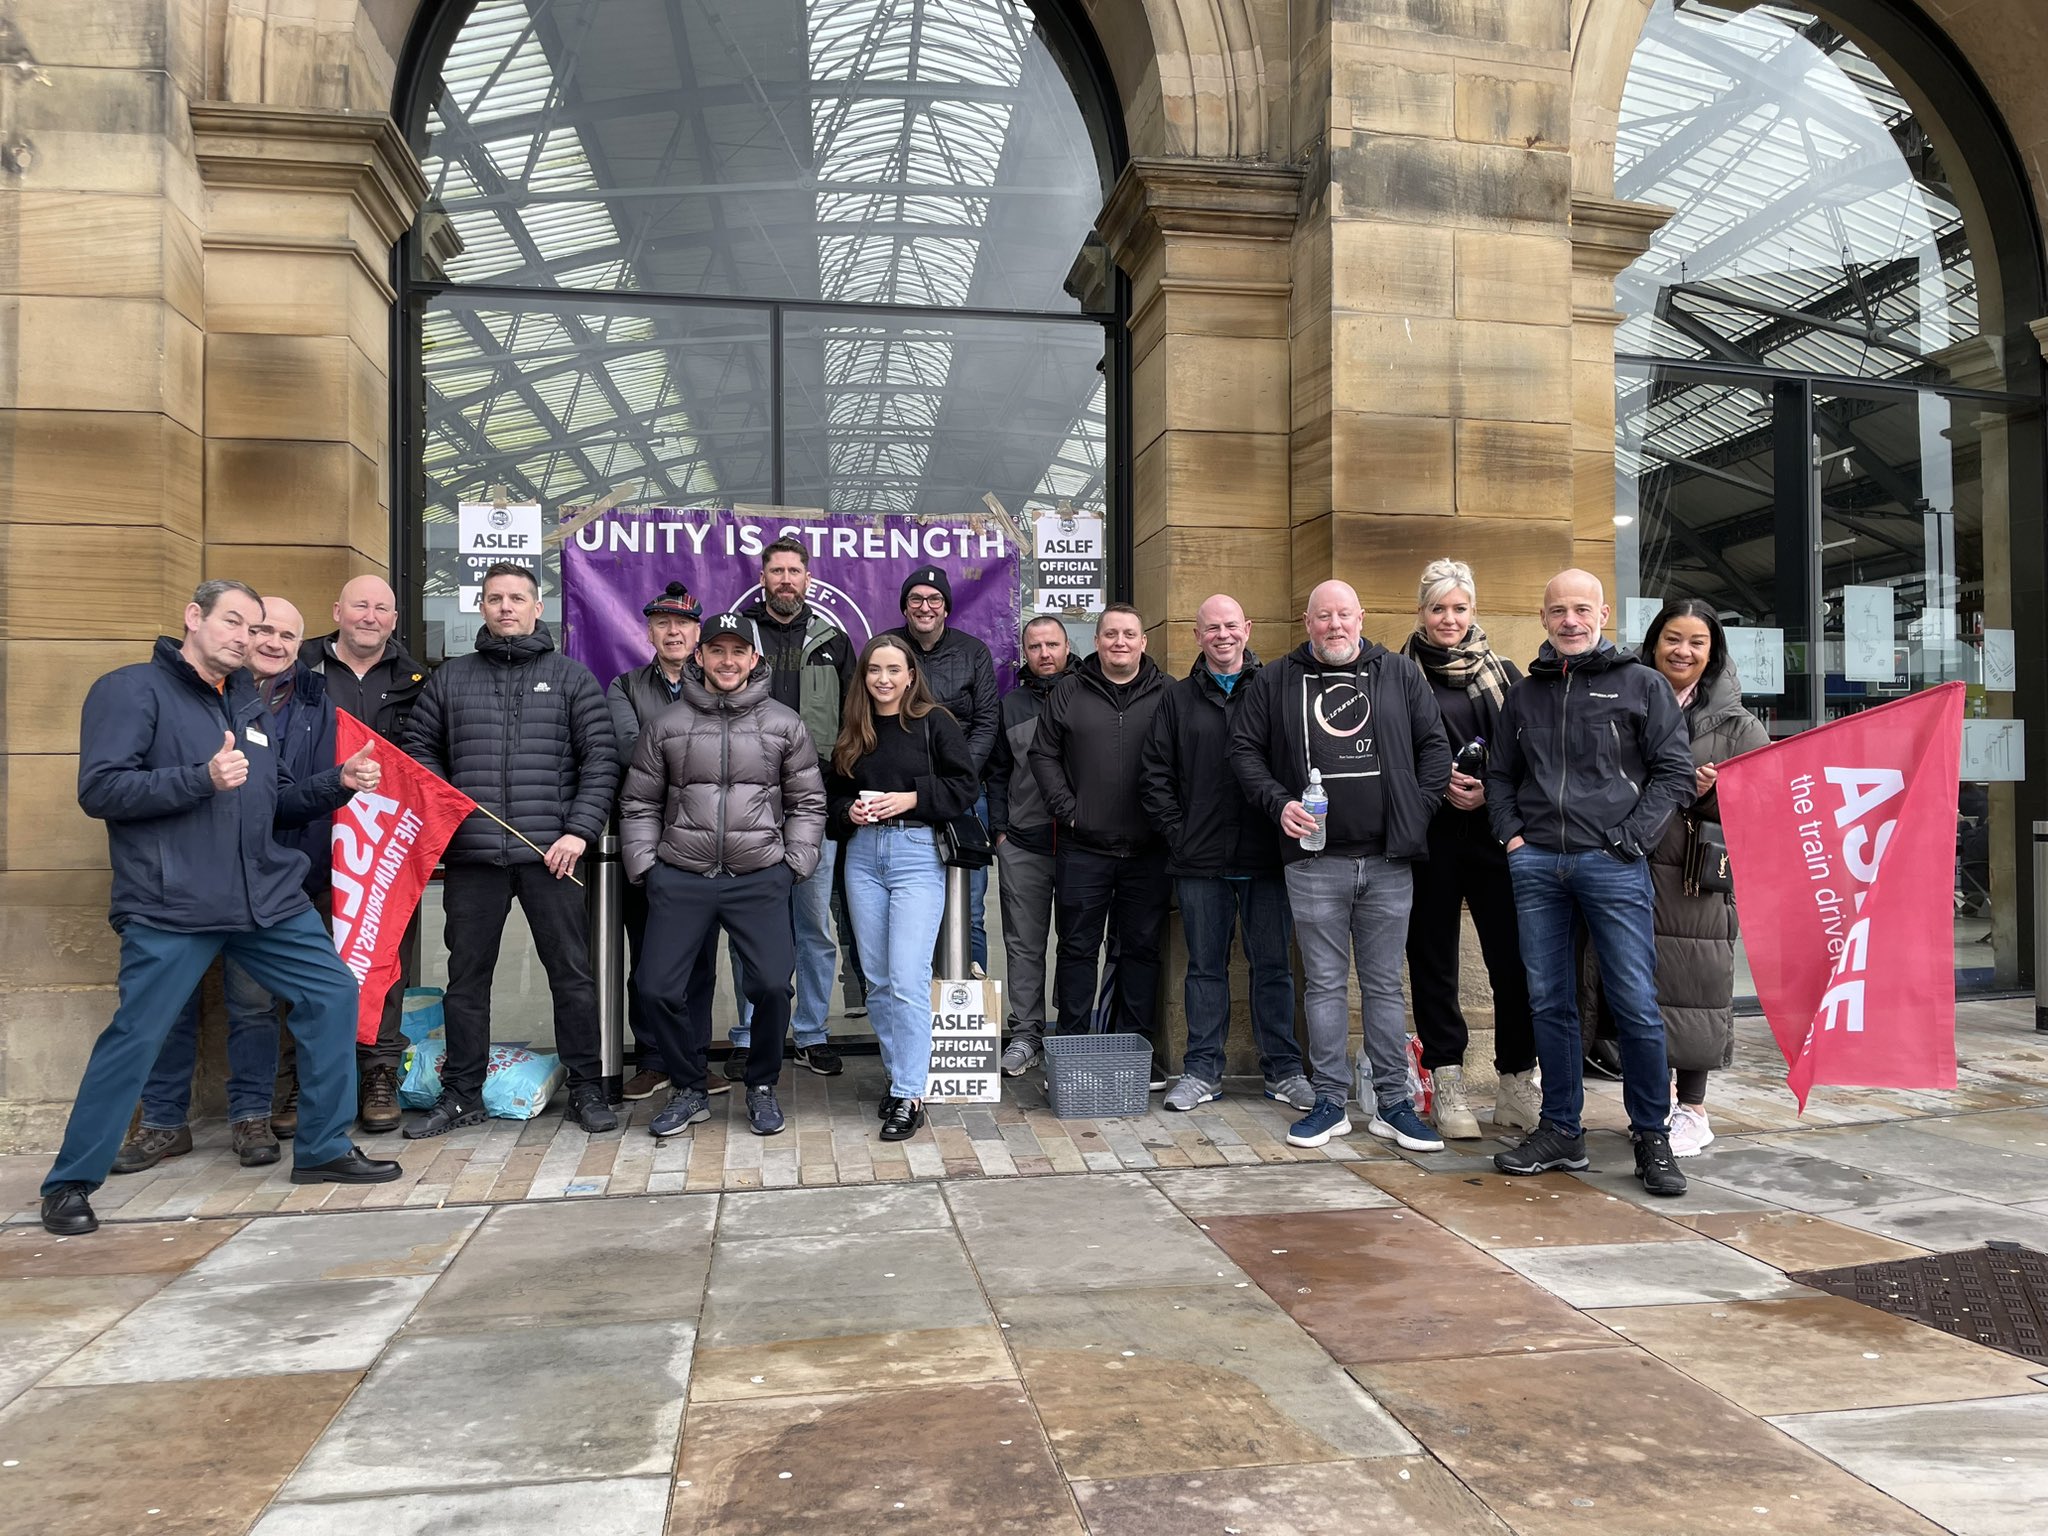 Αγγλία: Οι μηχανοδηγοί ξεκινούν τριήμερη απεργία για αυξήσεις μισθών και εργασιακές συνθήκες